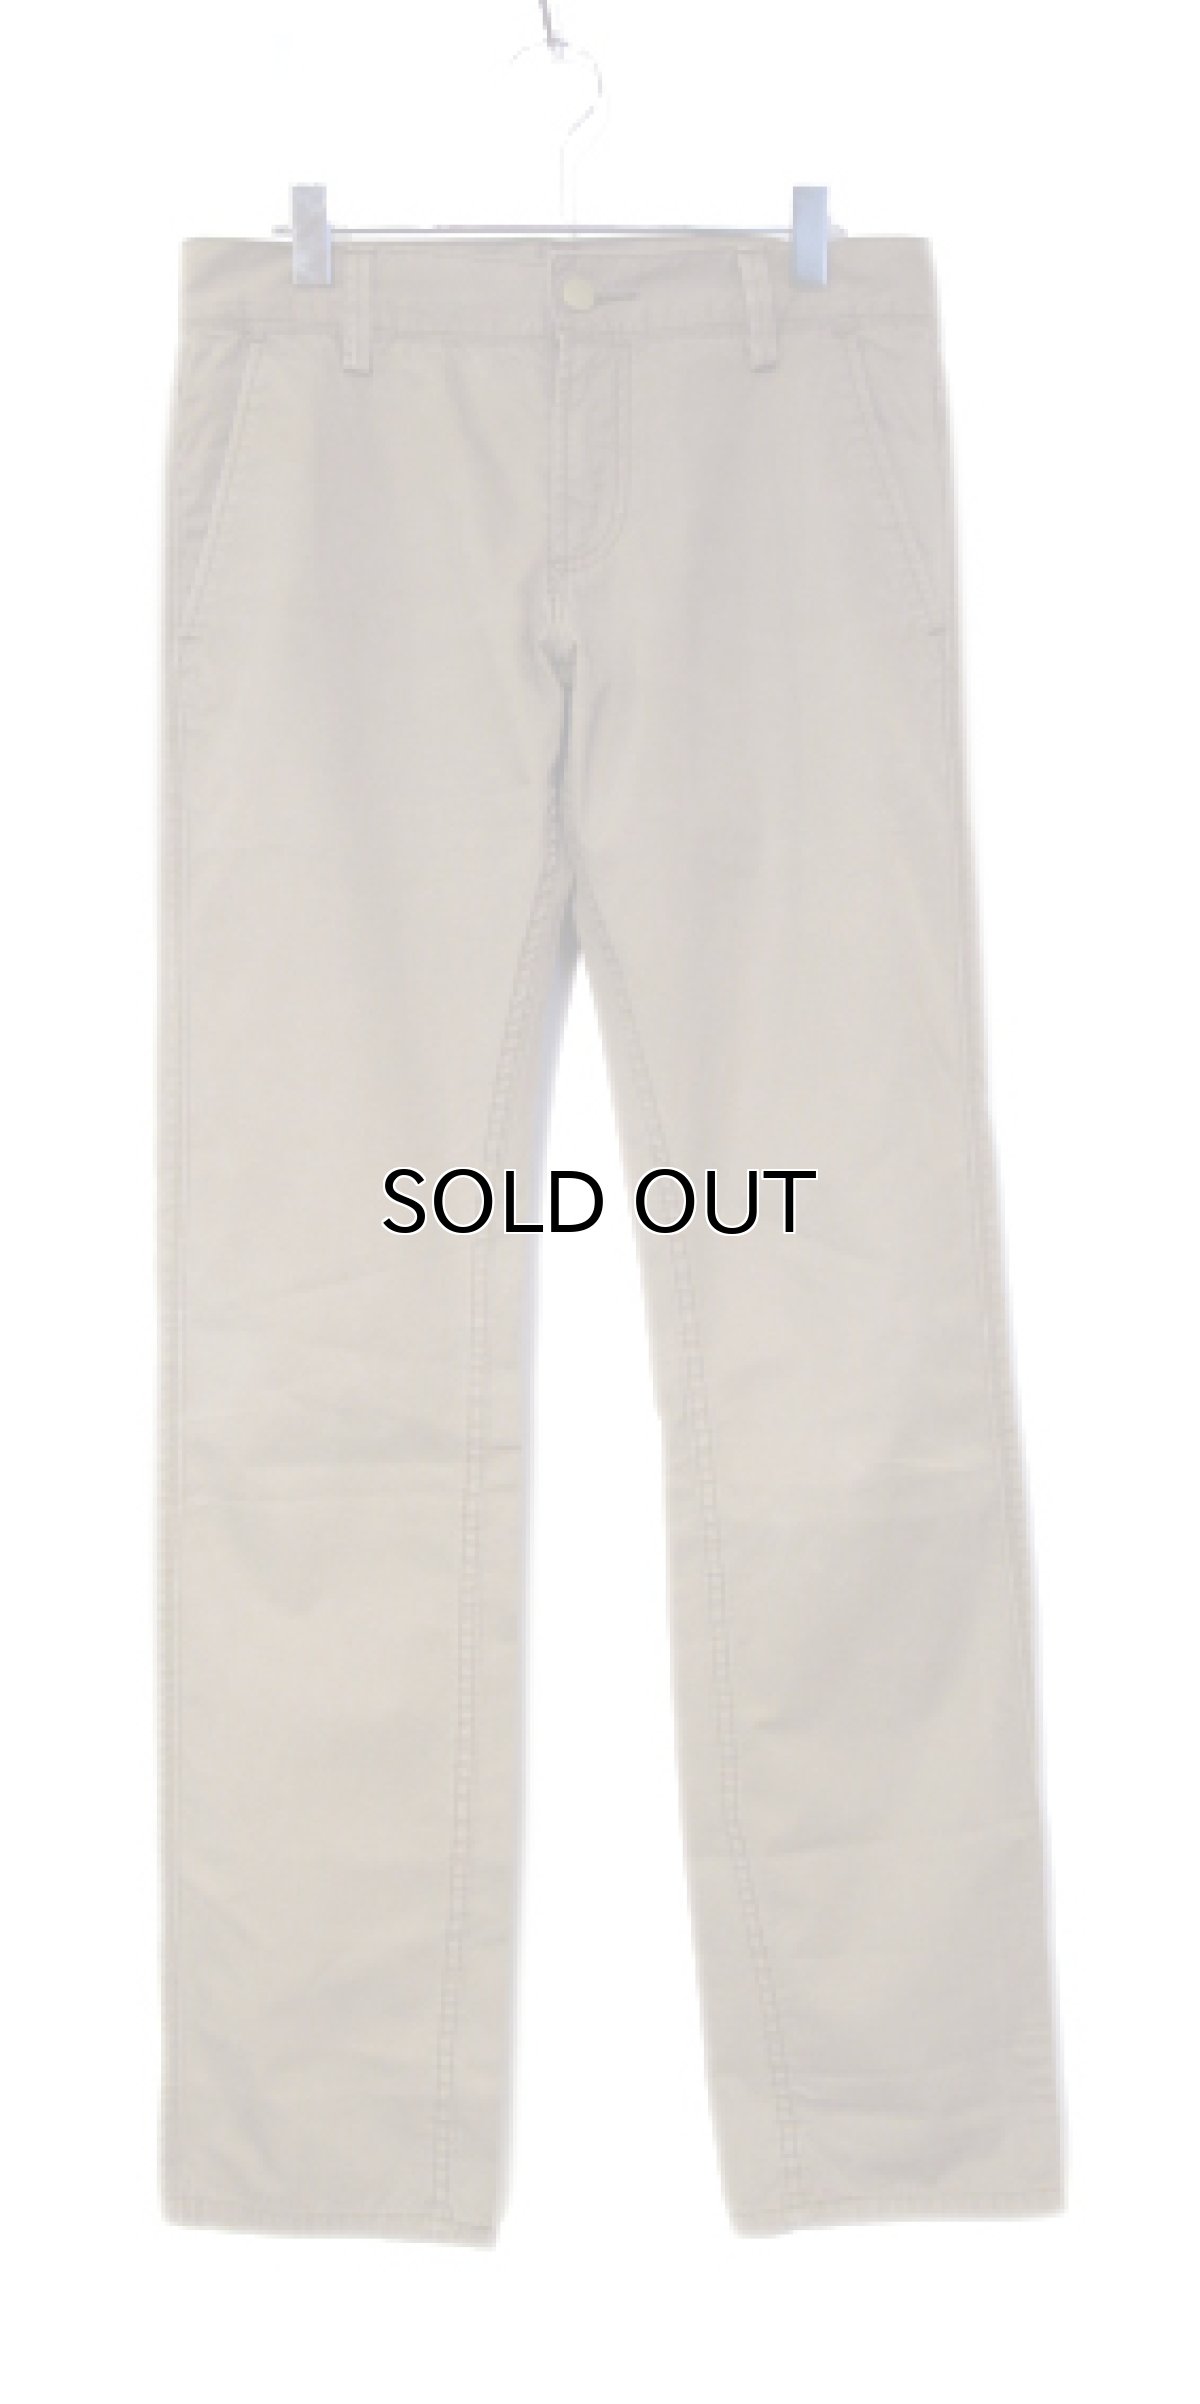 画像1: Levi's 511 Cotton Skinny Pants　BEIGE　size w 32 inch (表記 w30 L32) (1)